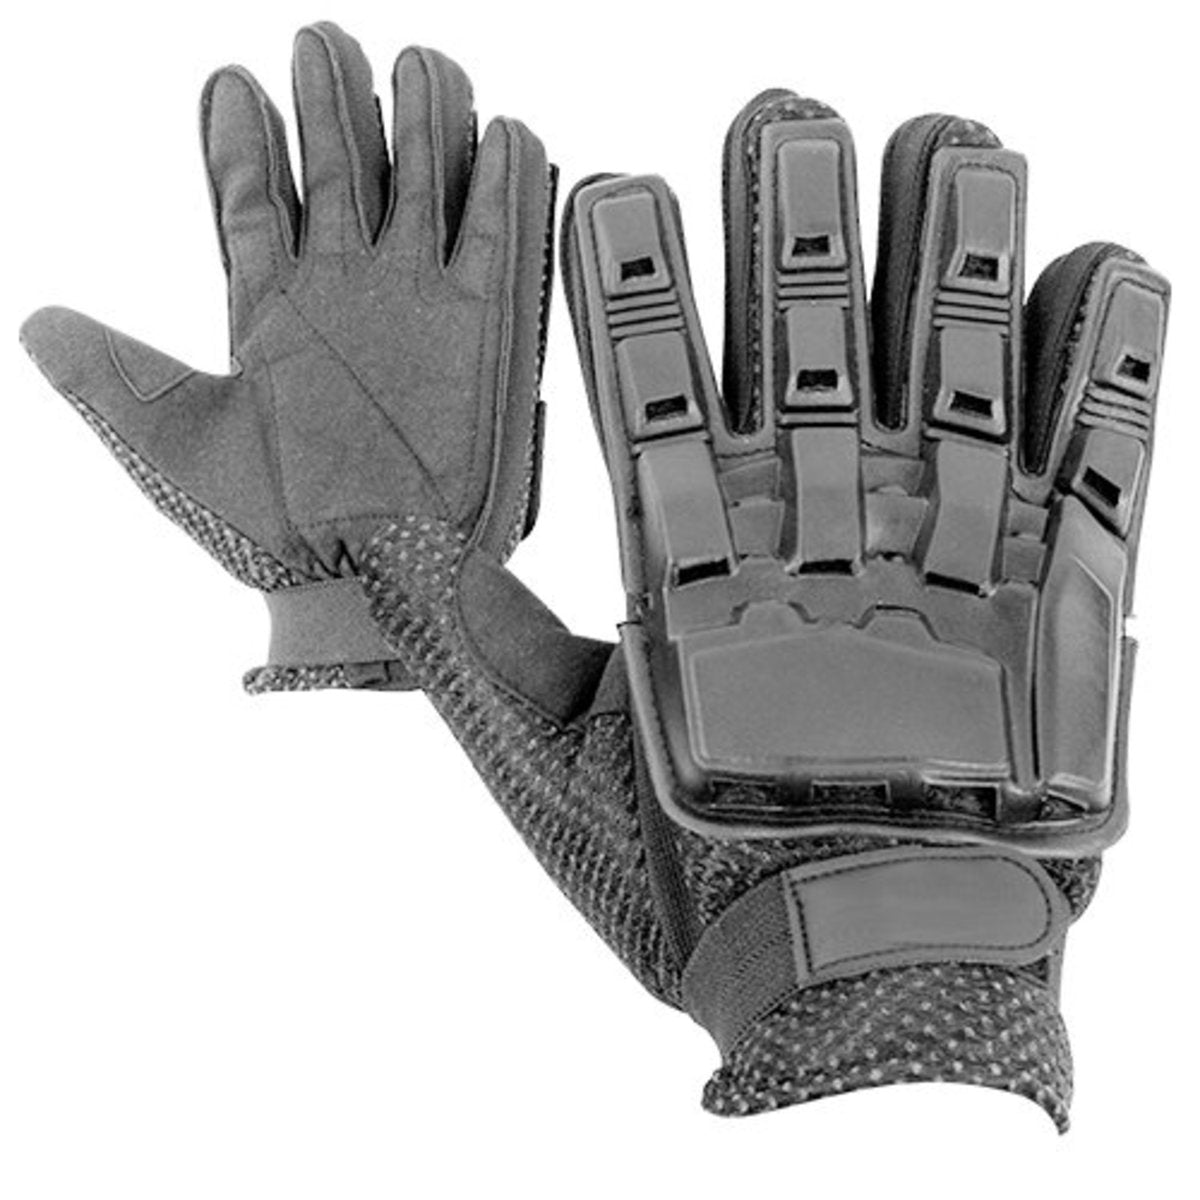 Valken Field Hardback Full Finger Gloves - Black - Small